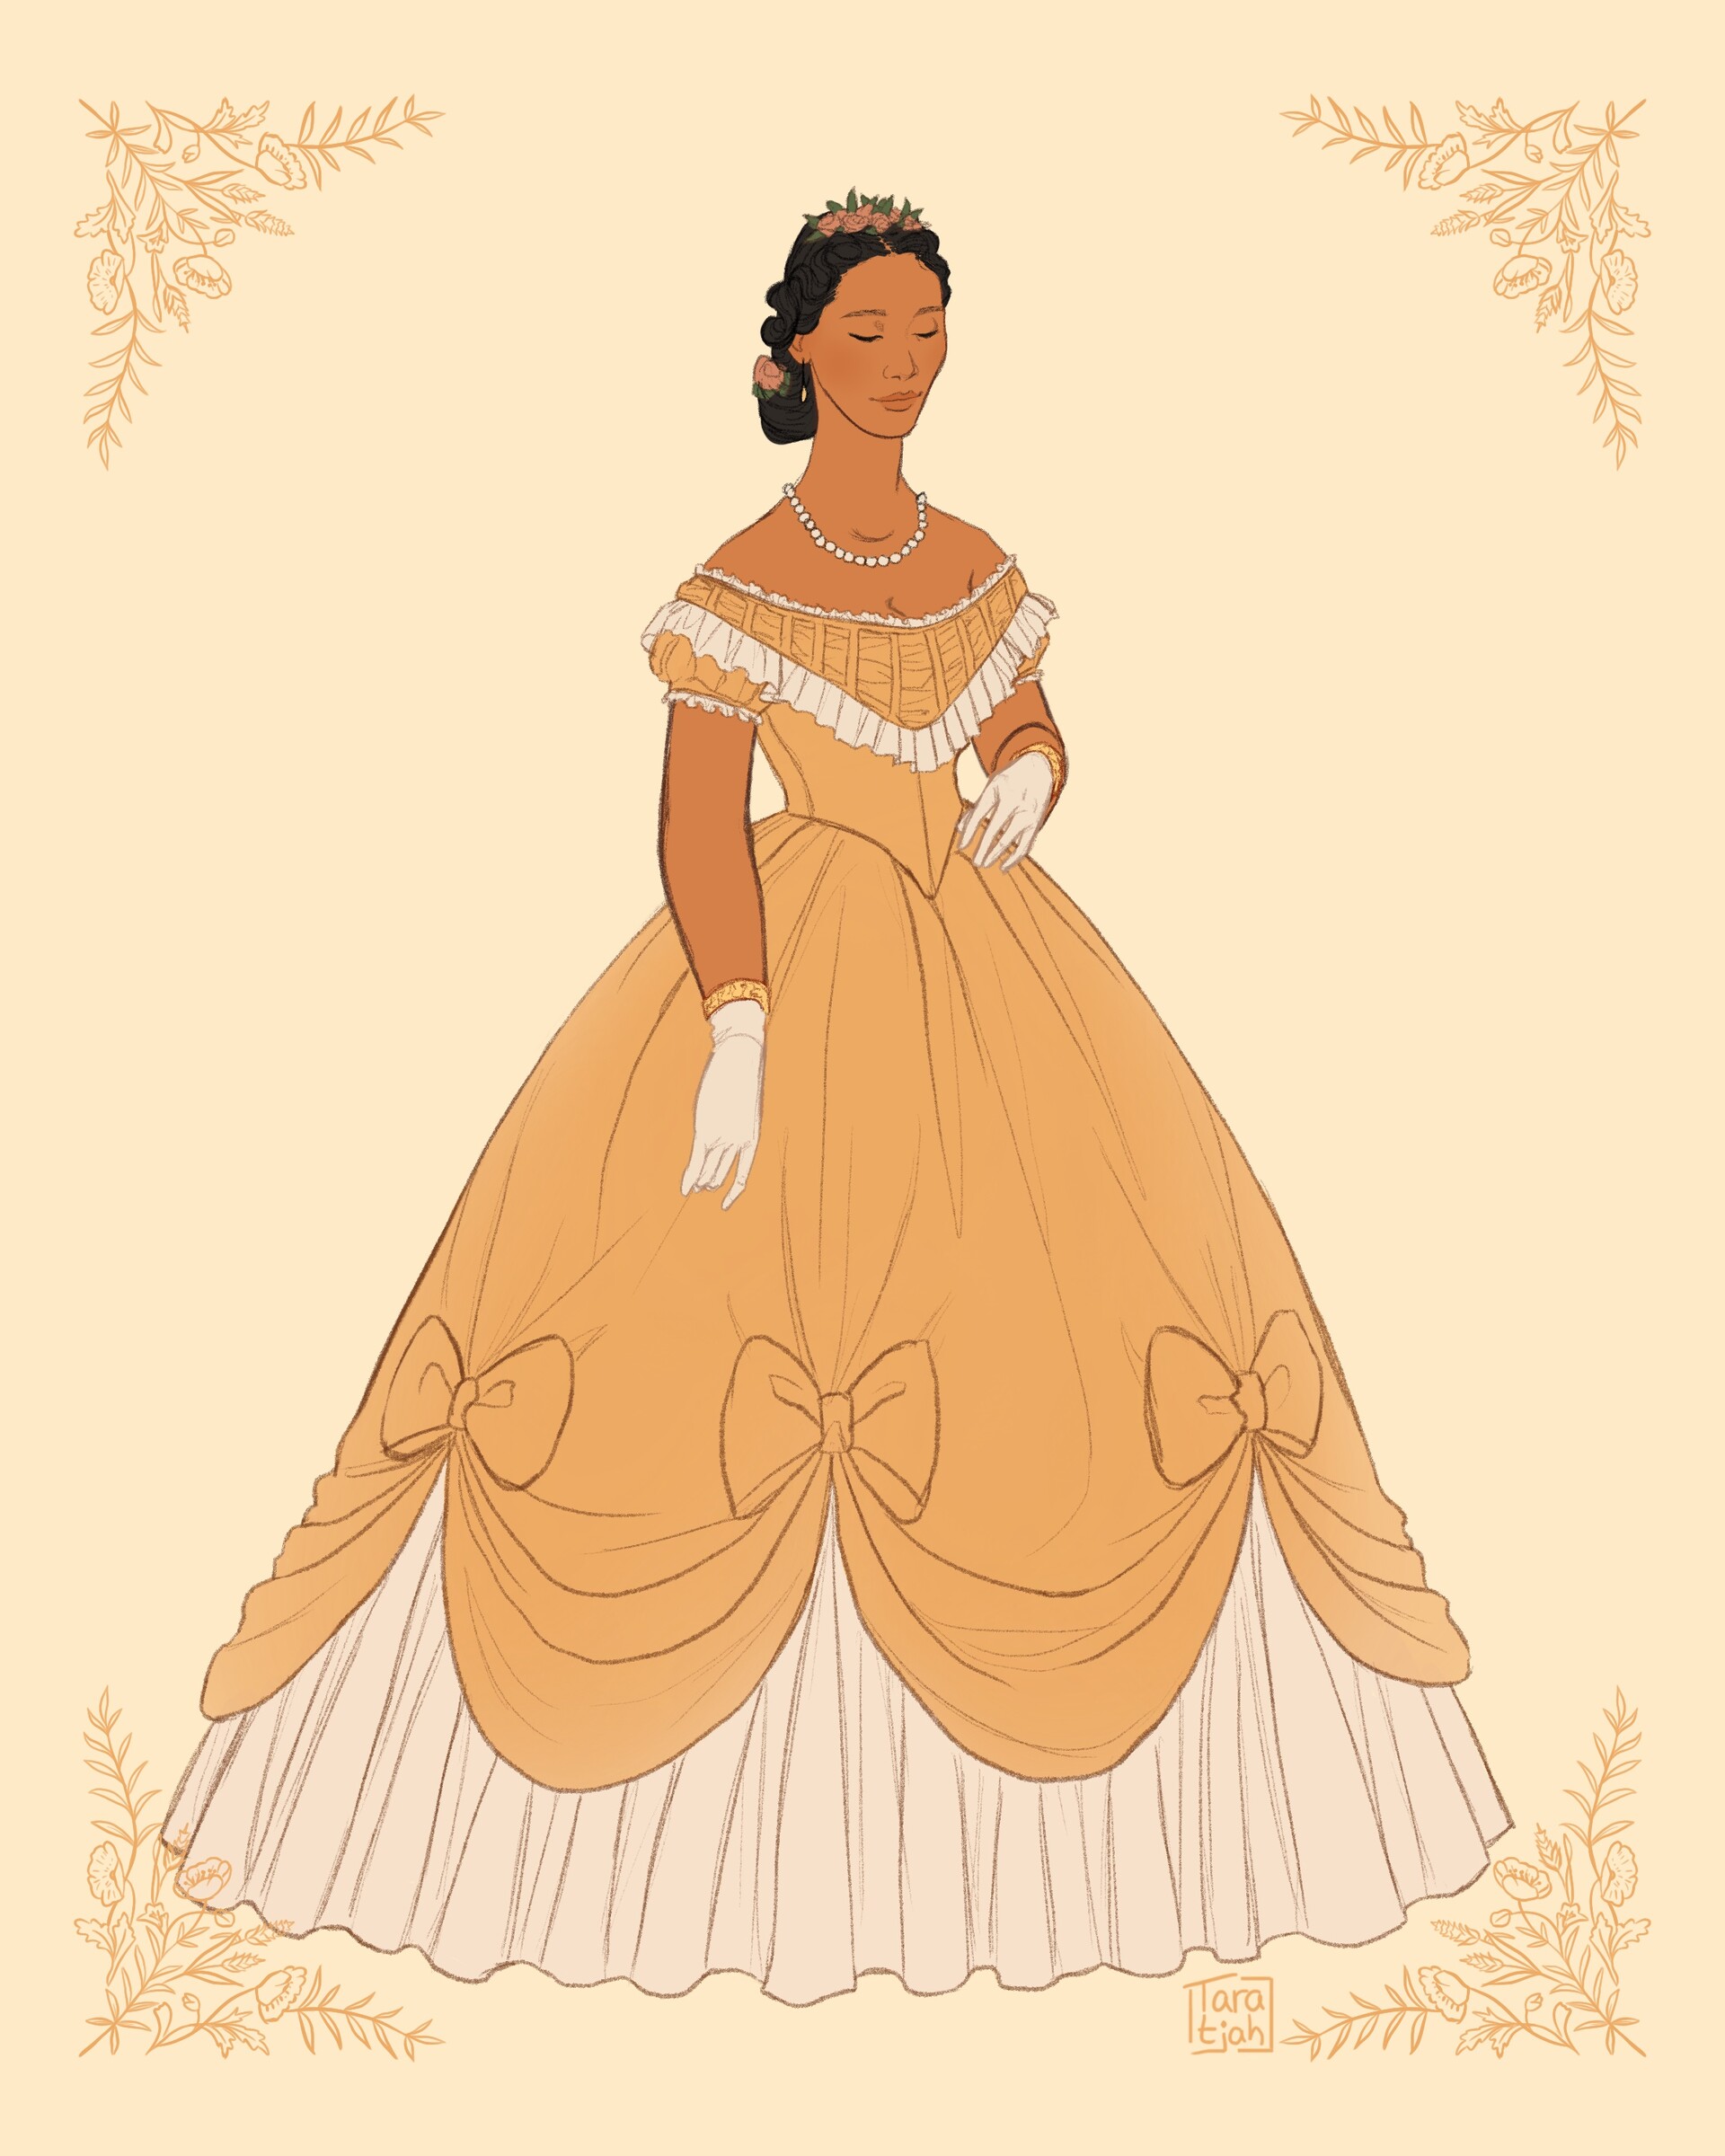 ArtStation - Historical Dress 1840-1880